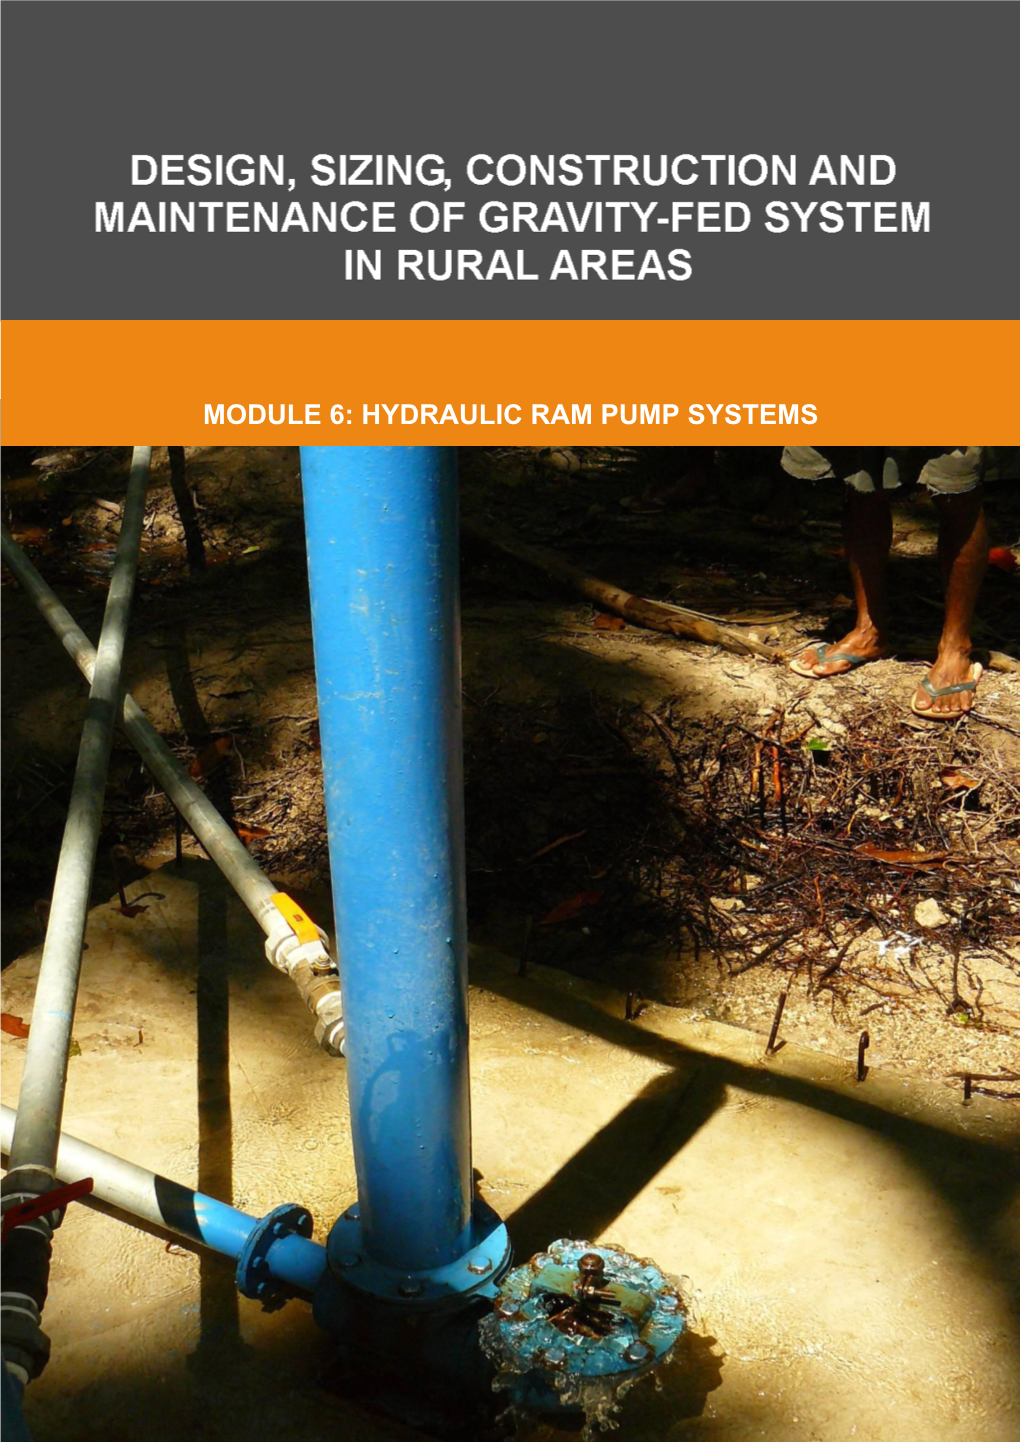 Module 6: Hydraulic Ram Pump Systems